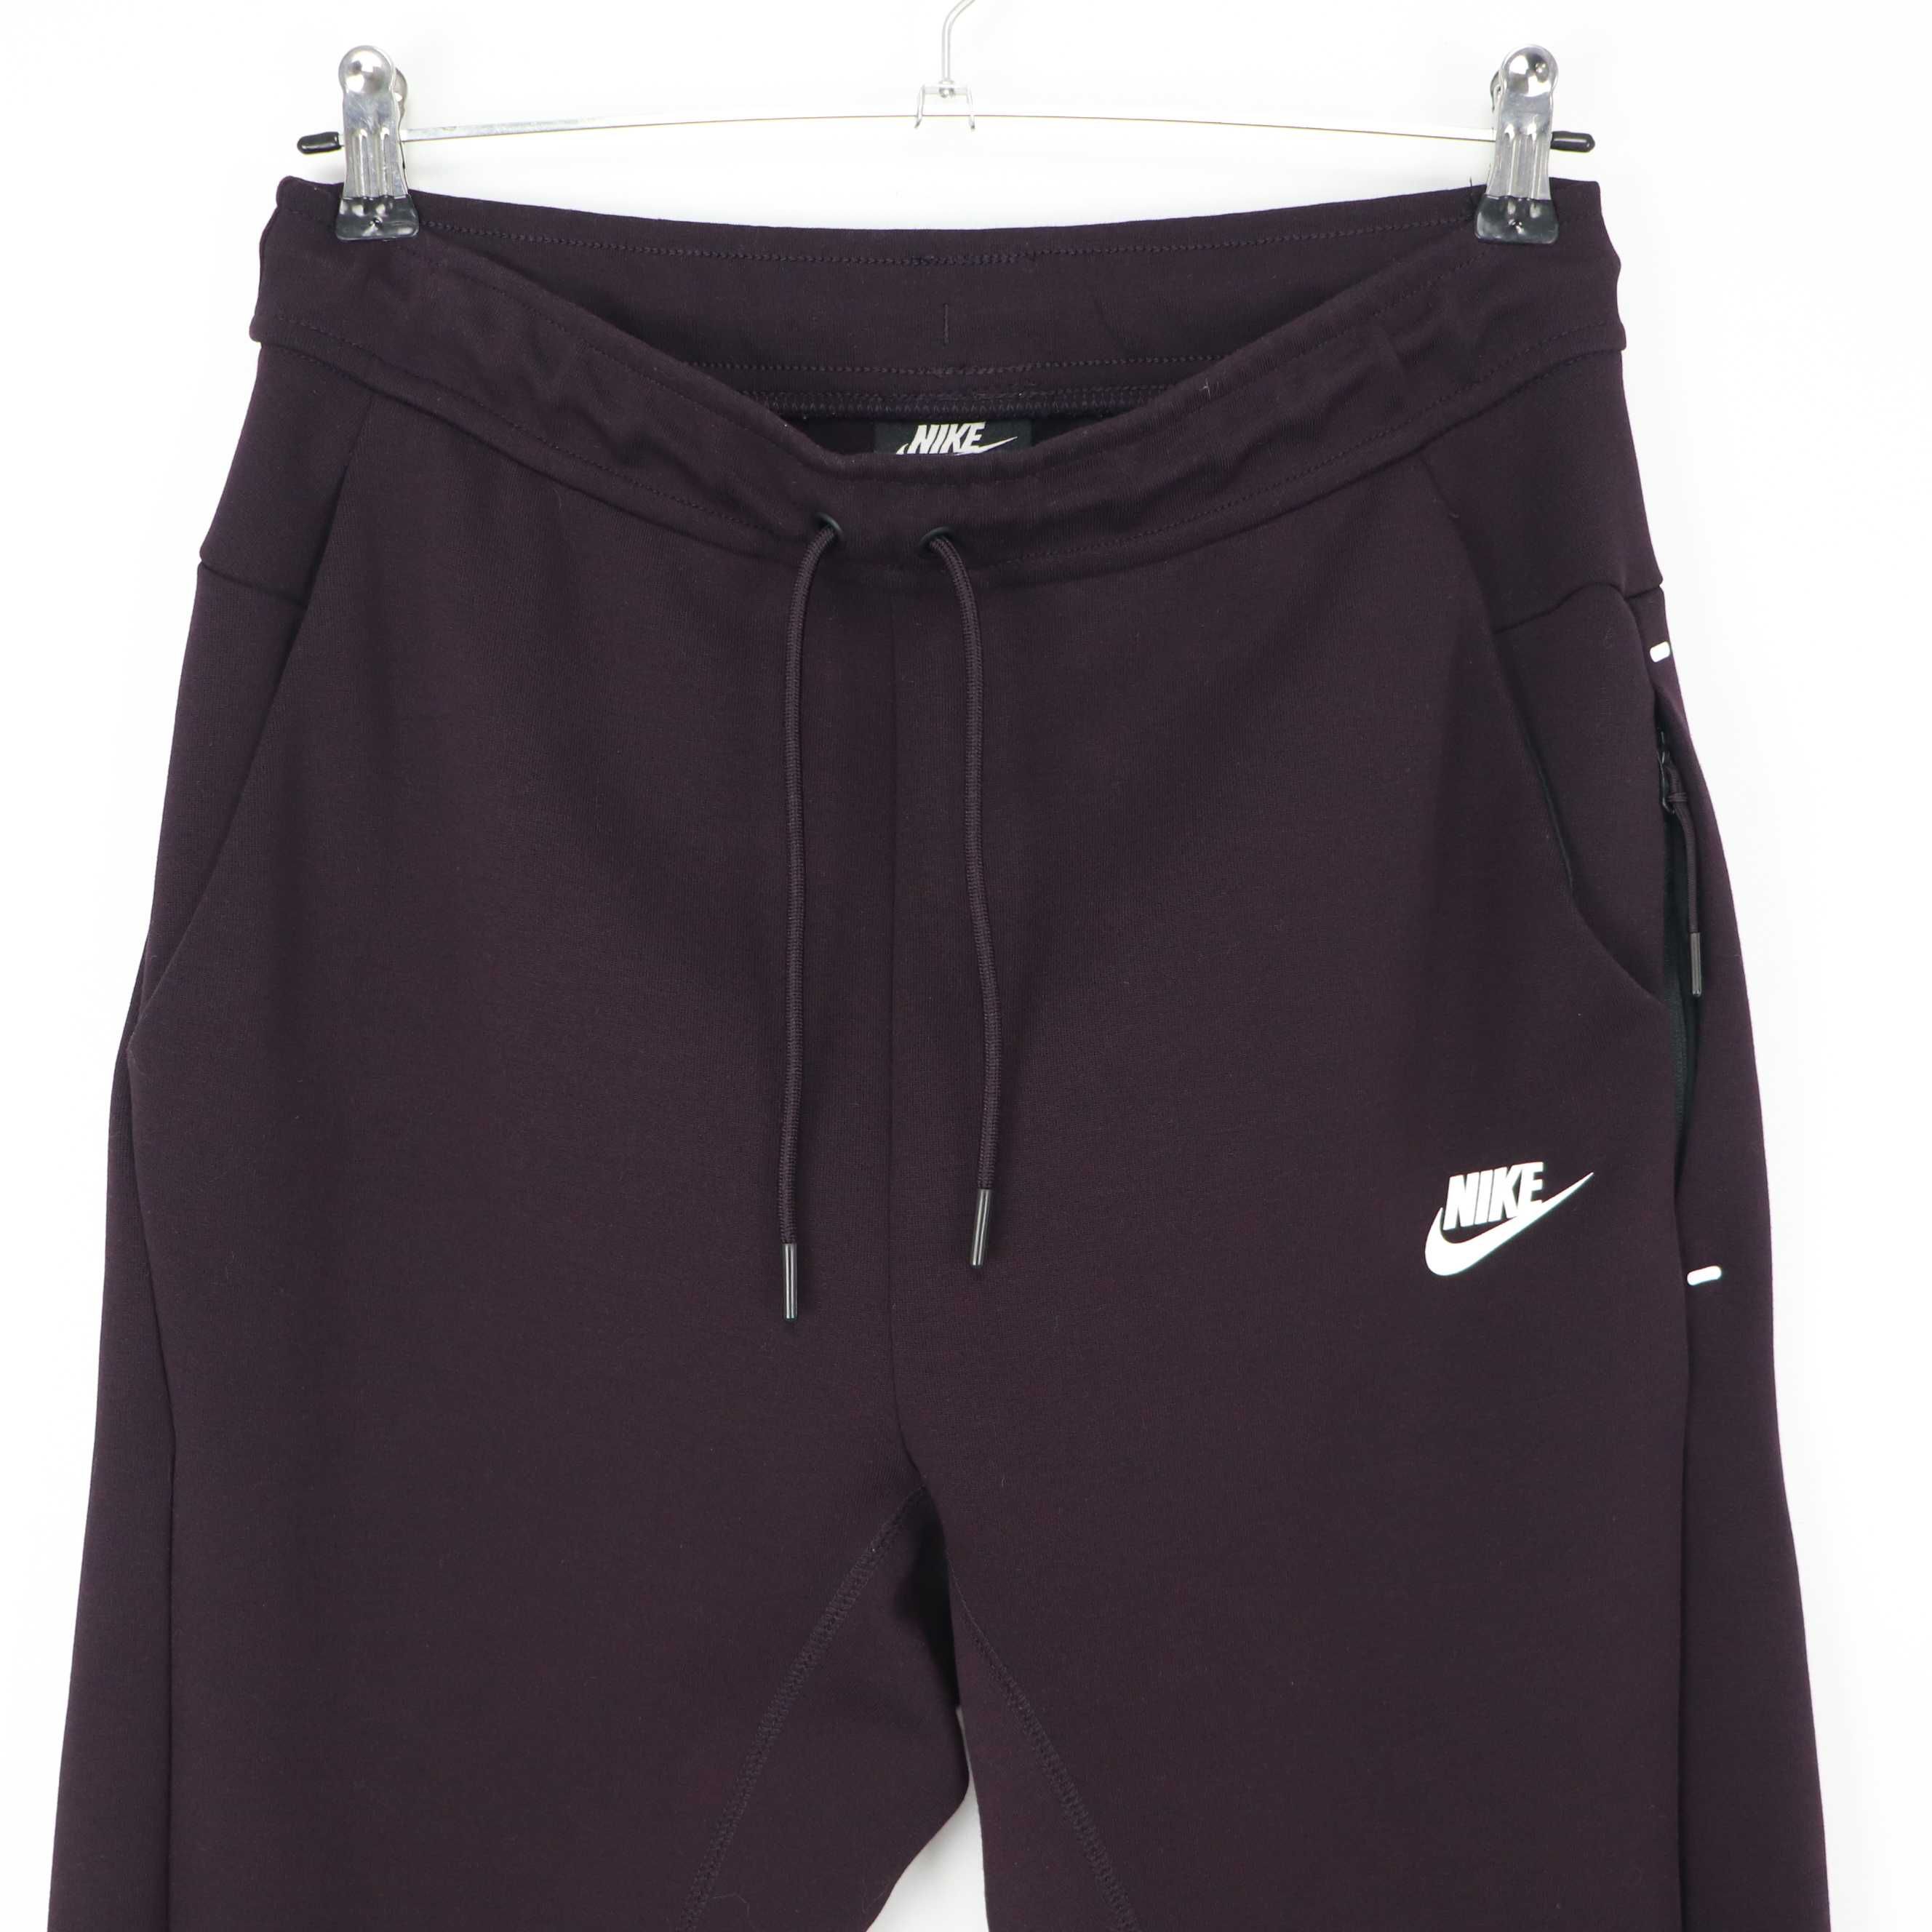 Чоловічі бордові спортивні штани Nike Tech Fleece оригінал [ S-M]